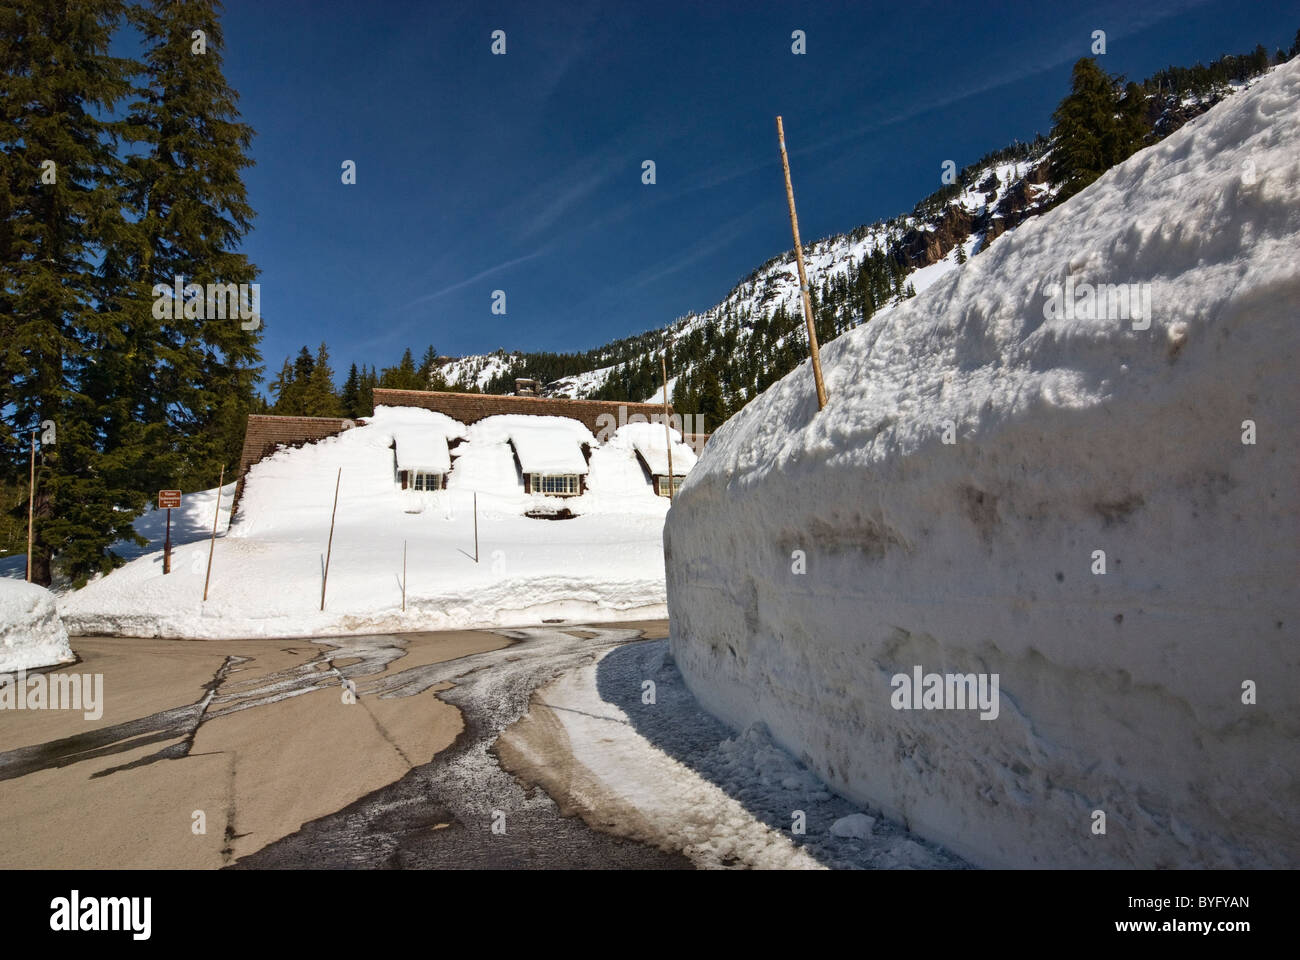 Muri di neve in inverno intorno al Parco di acciaio sede al parco nazionale di Crater Lake, Oregon, Stati Uniti d'America Foto Stock